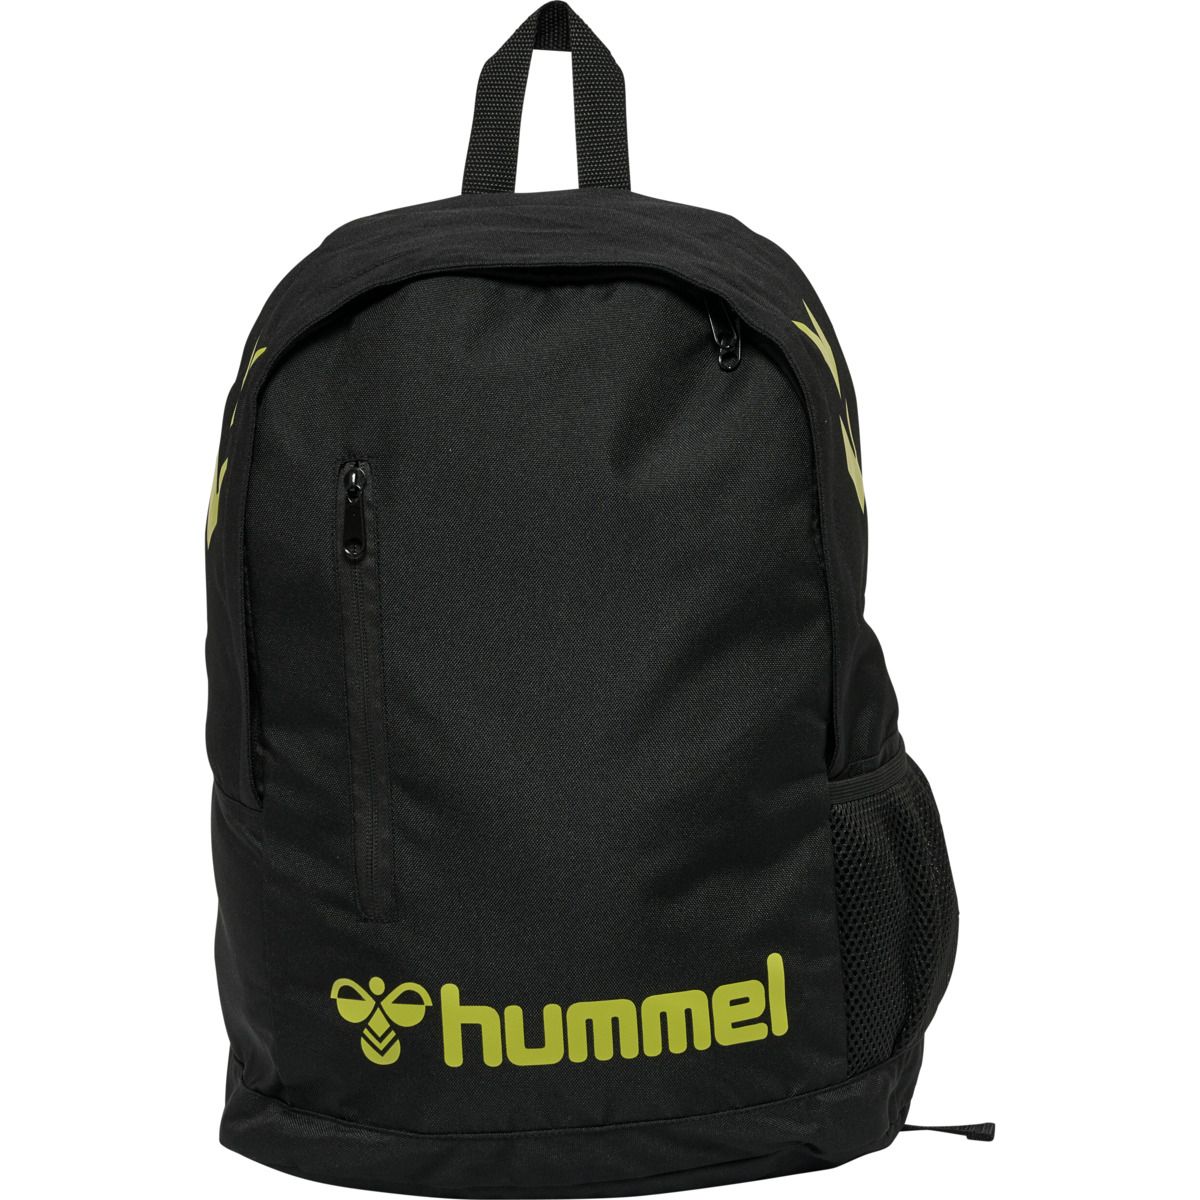 Hummel Action Back Pack Daybag